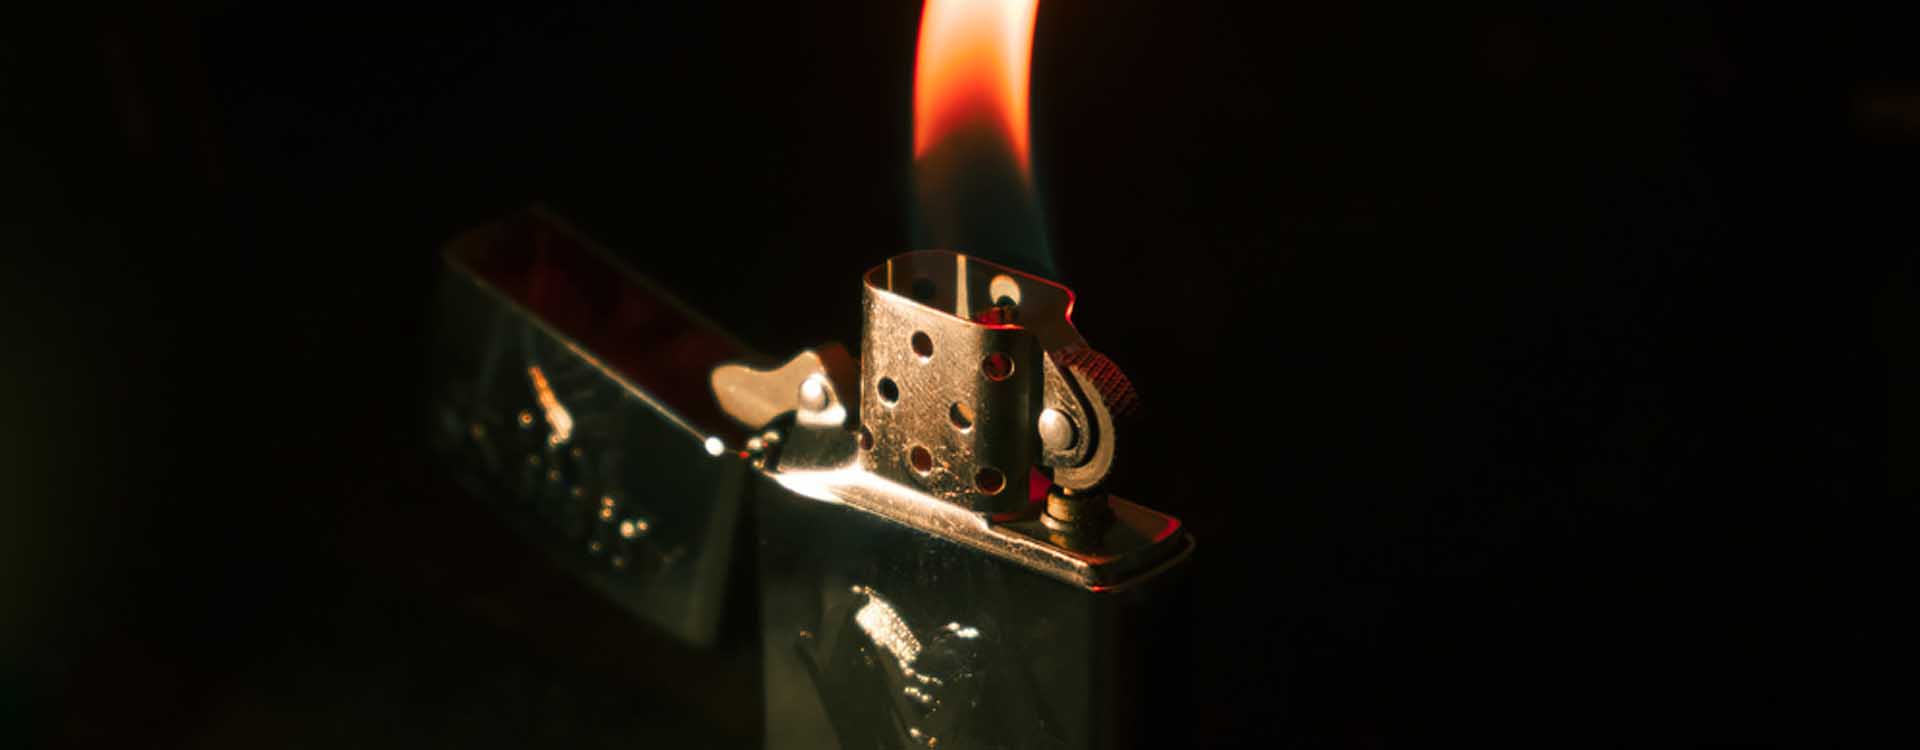 Zapaľovač Zippo - detail plameňa